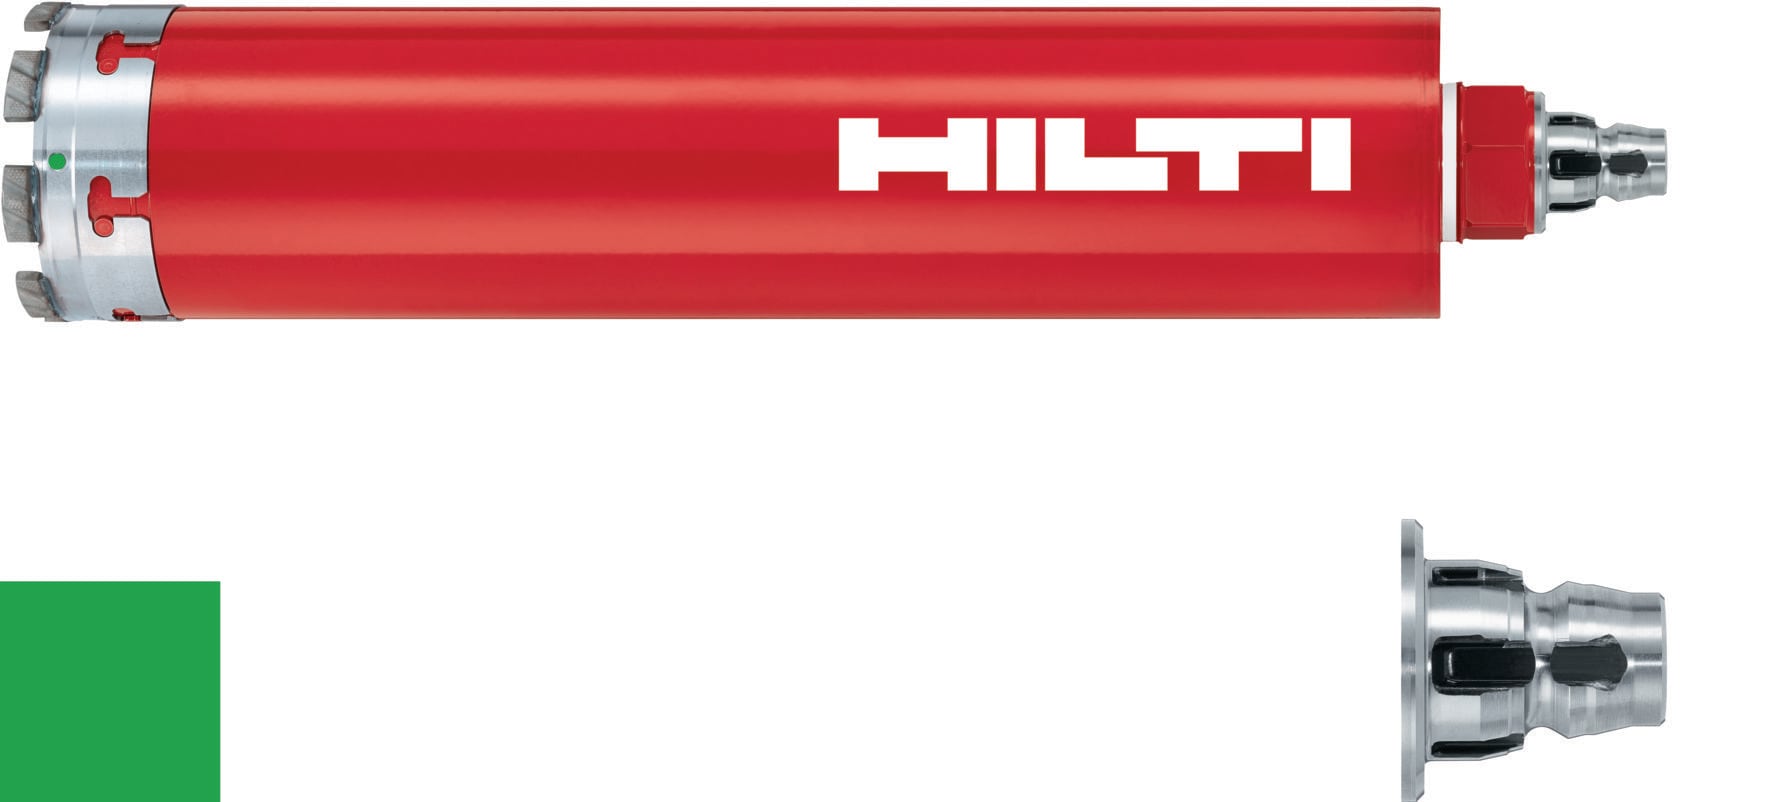 HILTI ヒルティ BX 3用ピン (連発) X-P 17 B3 MX (400本) コンクリート(ハード)17mm 3558702 - 2